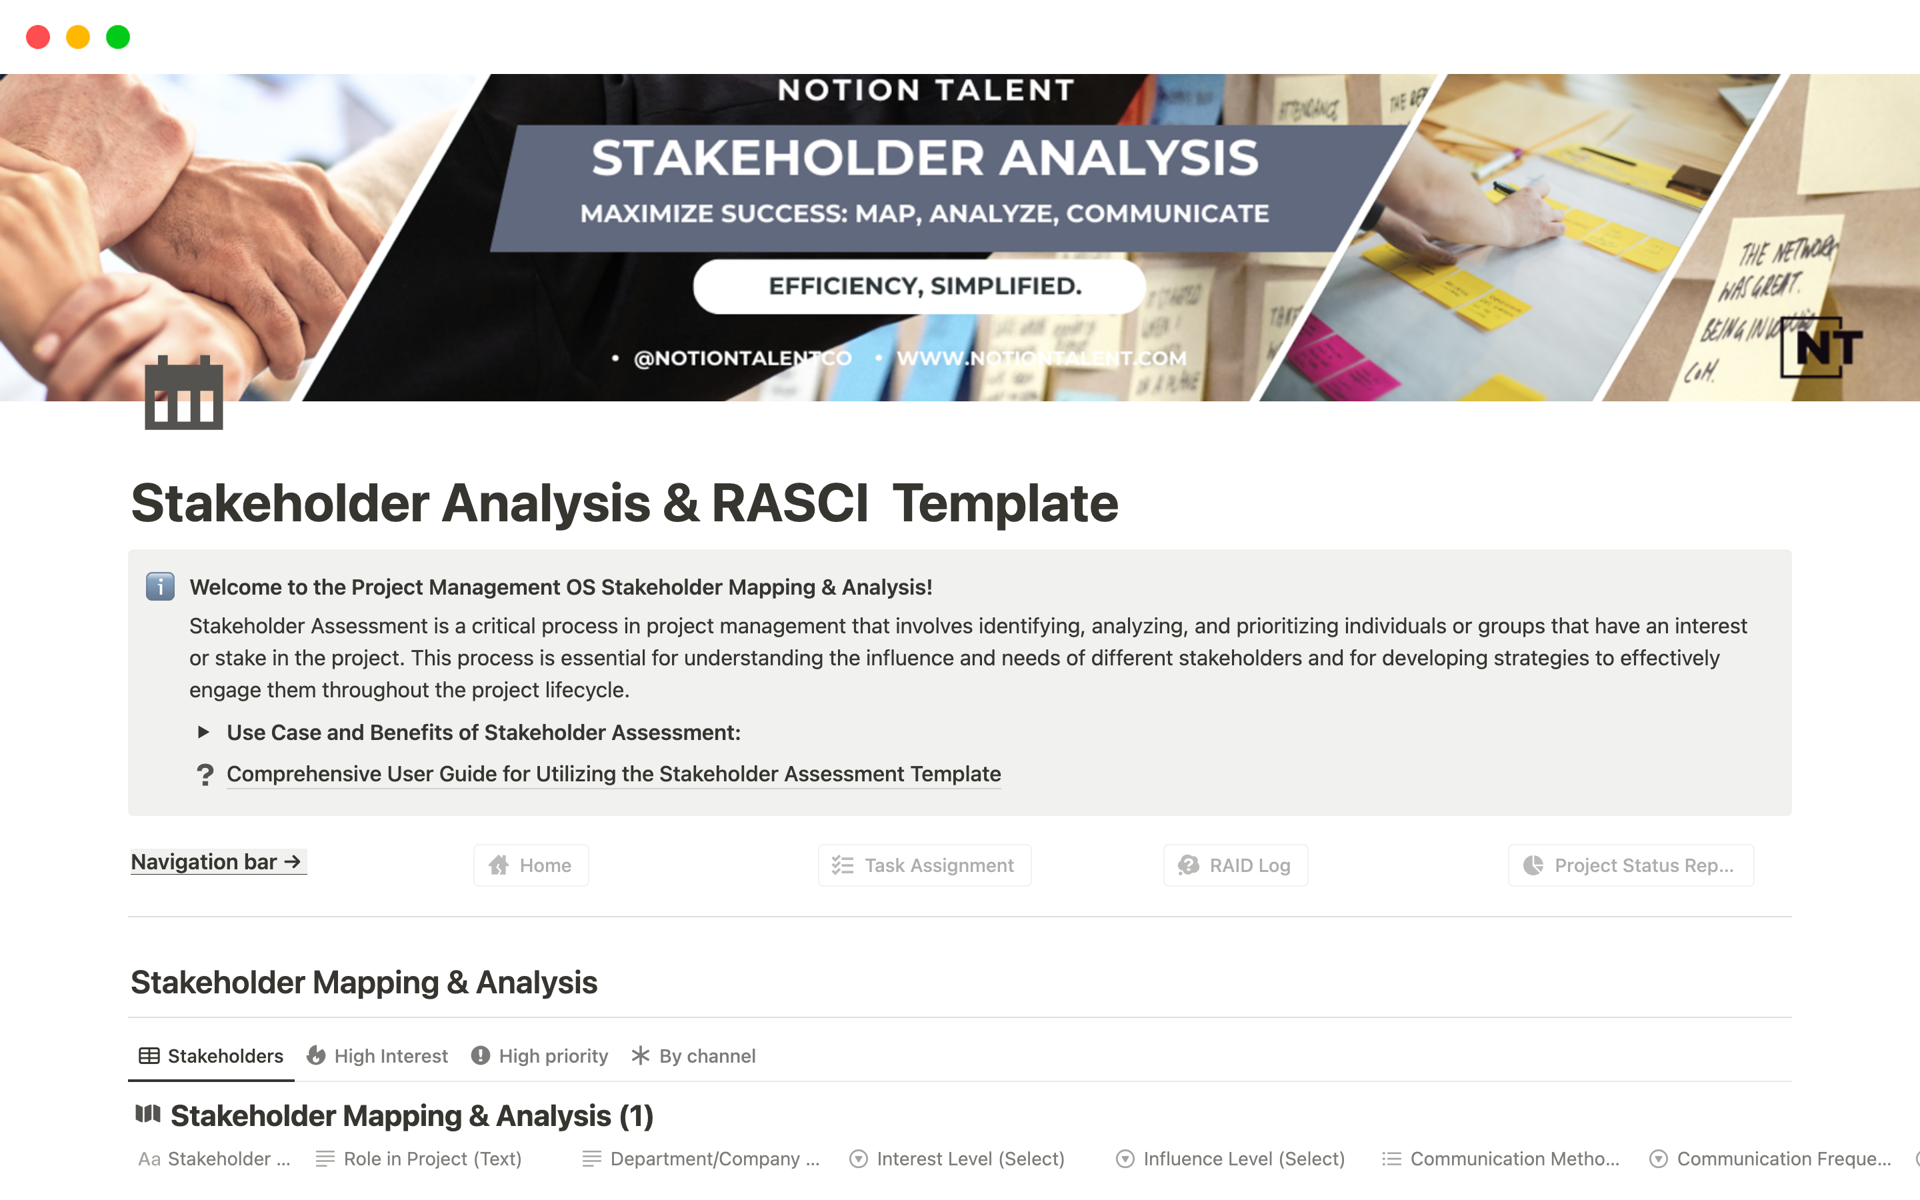 Vista previa de plantilla para Stakeholder Analysis & RASCI